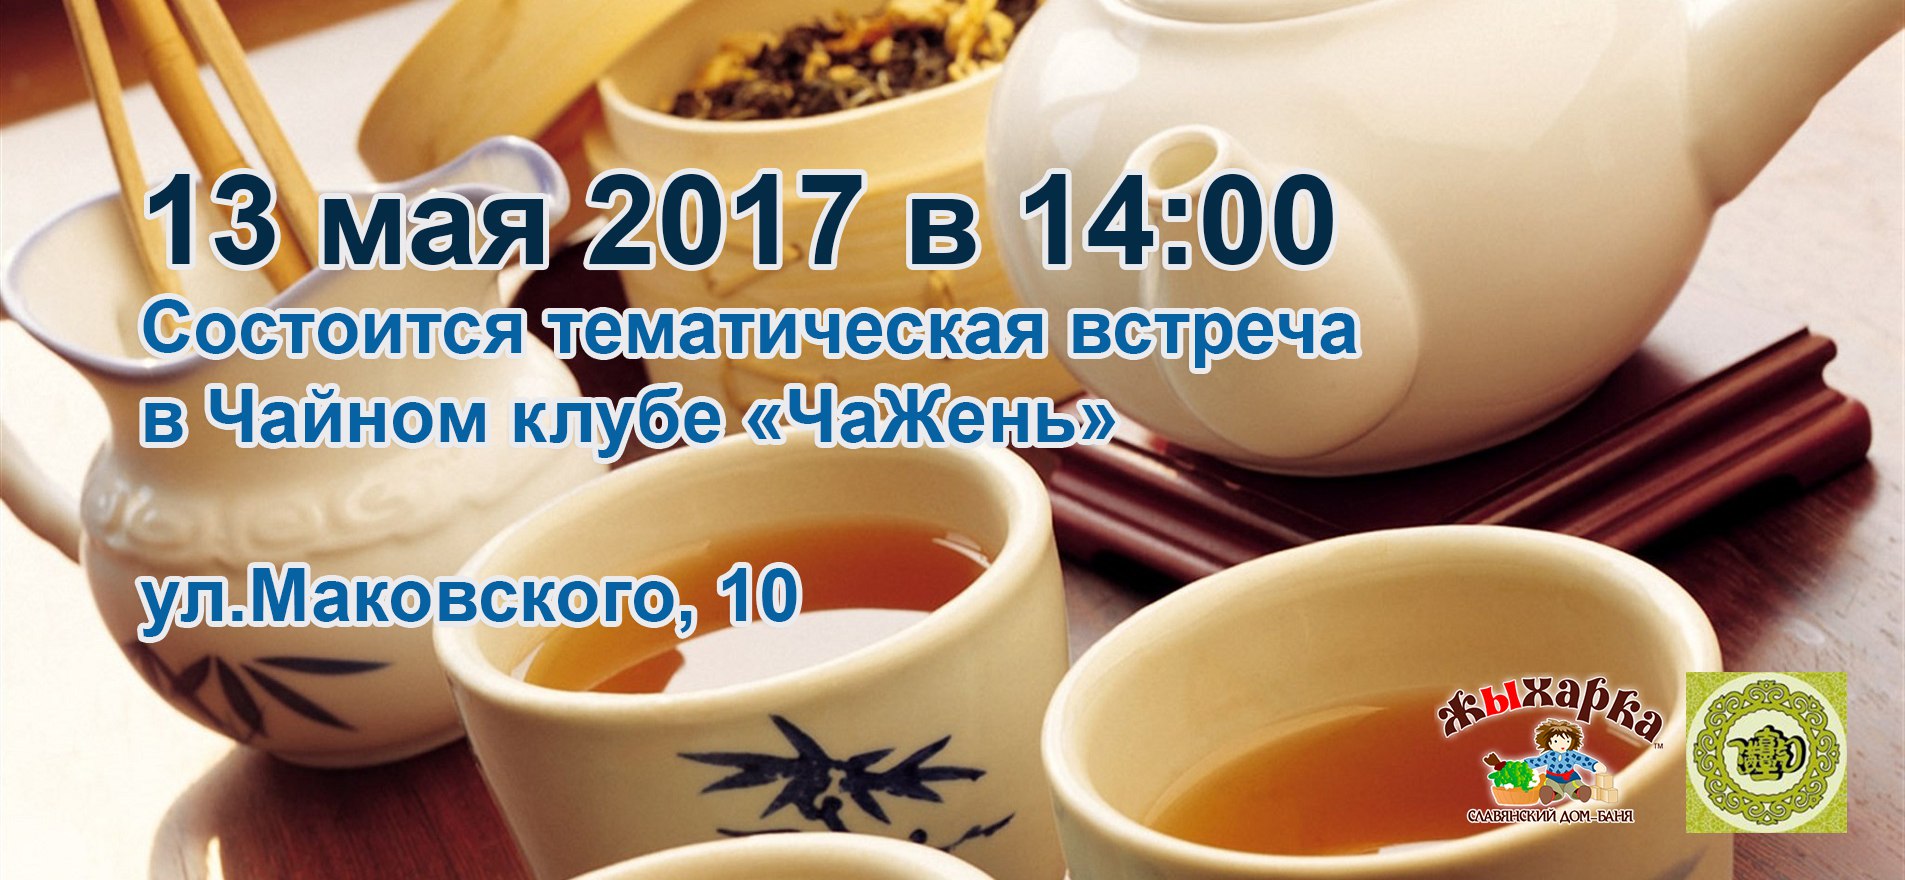 13 мая тематическая встреча в чайном клубе